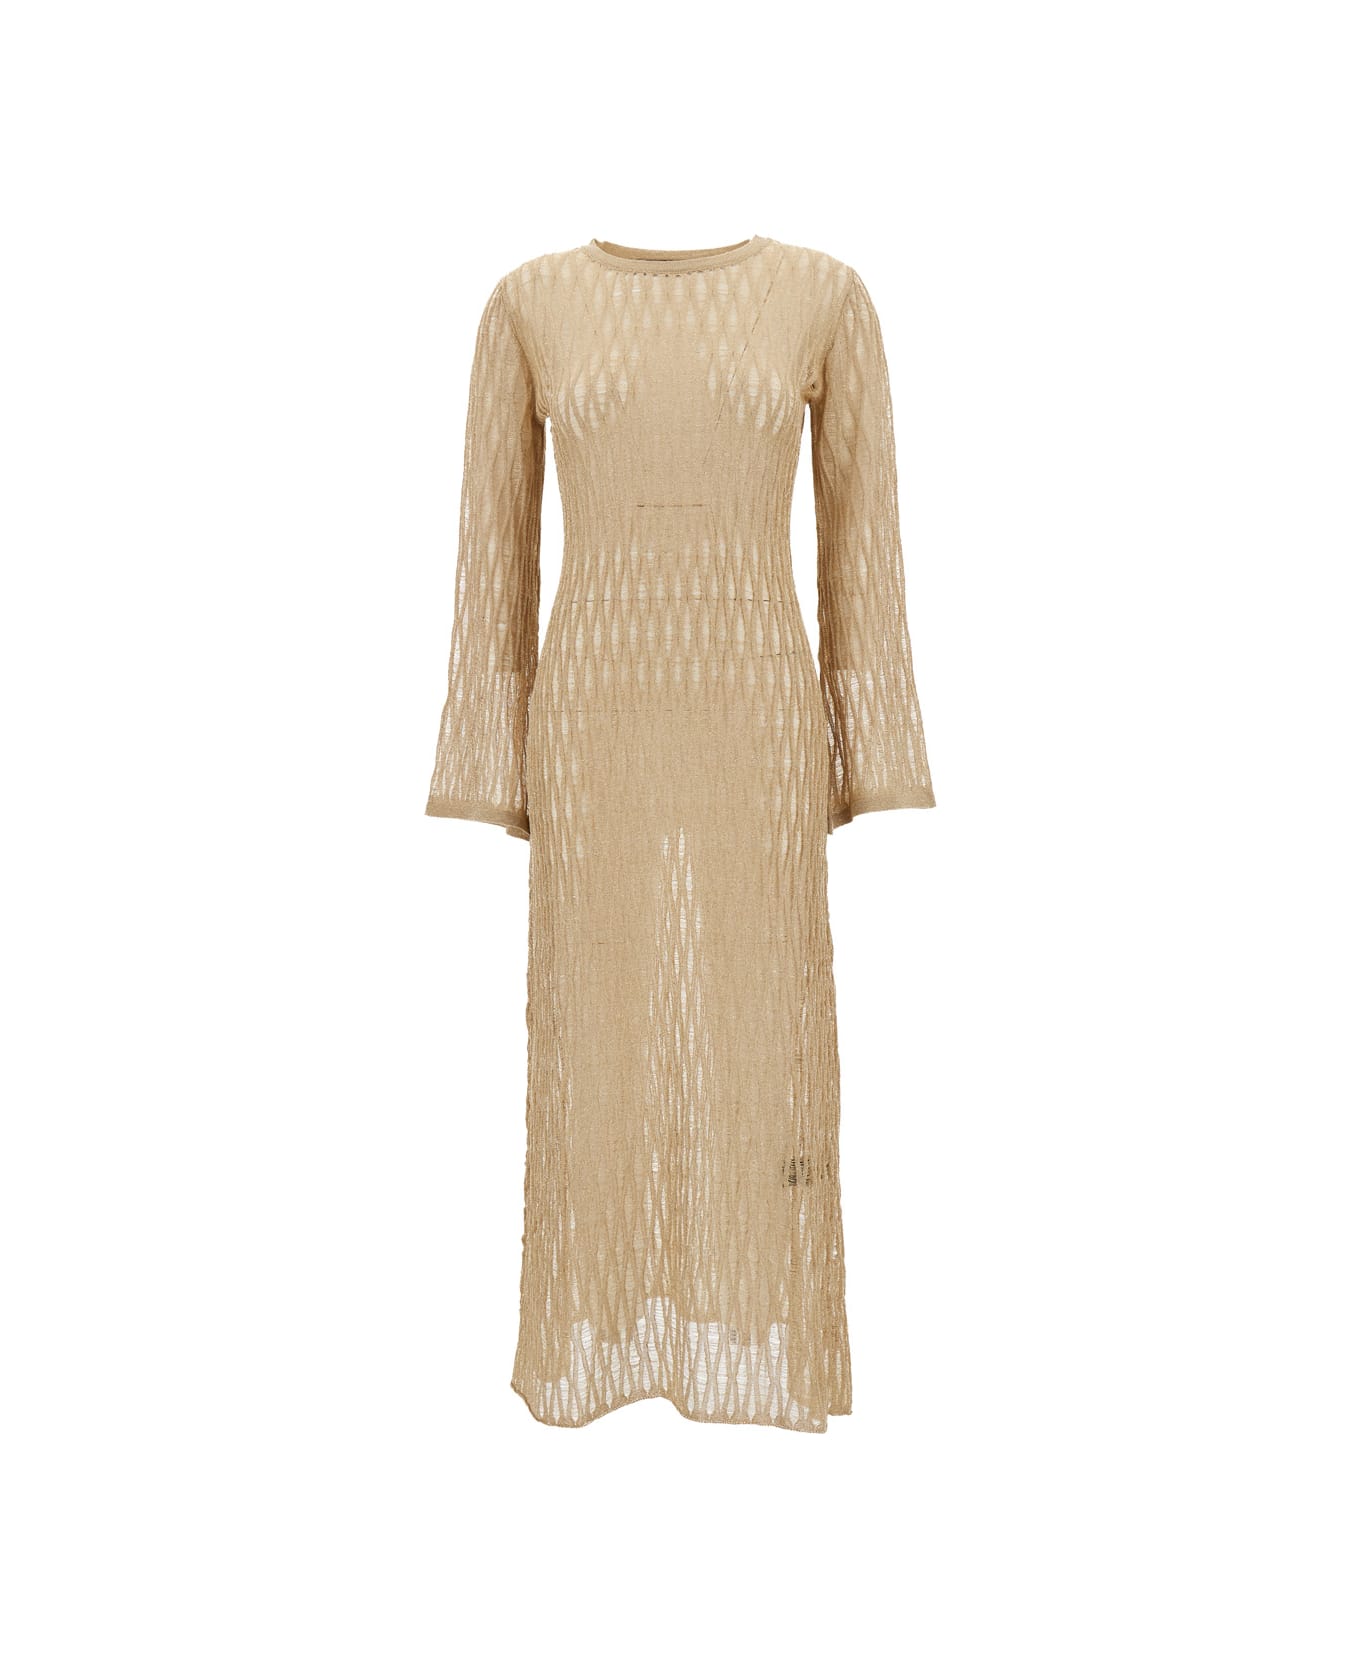 Federica Tosi Long Beige Dress With U Neckline In Knit Woman - Beige